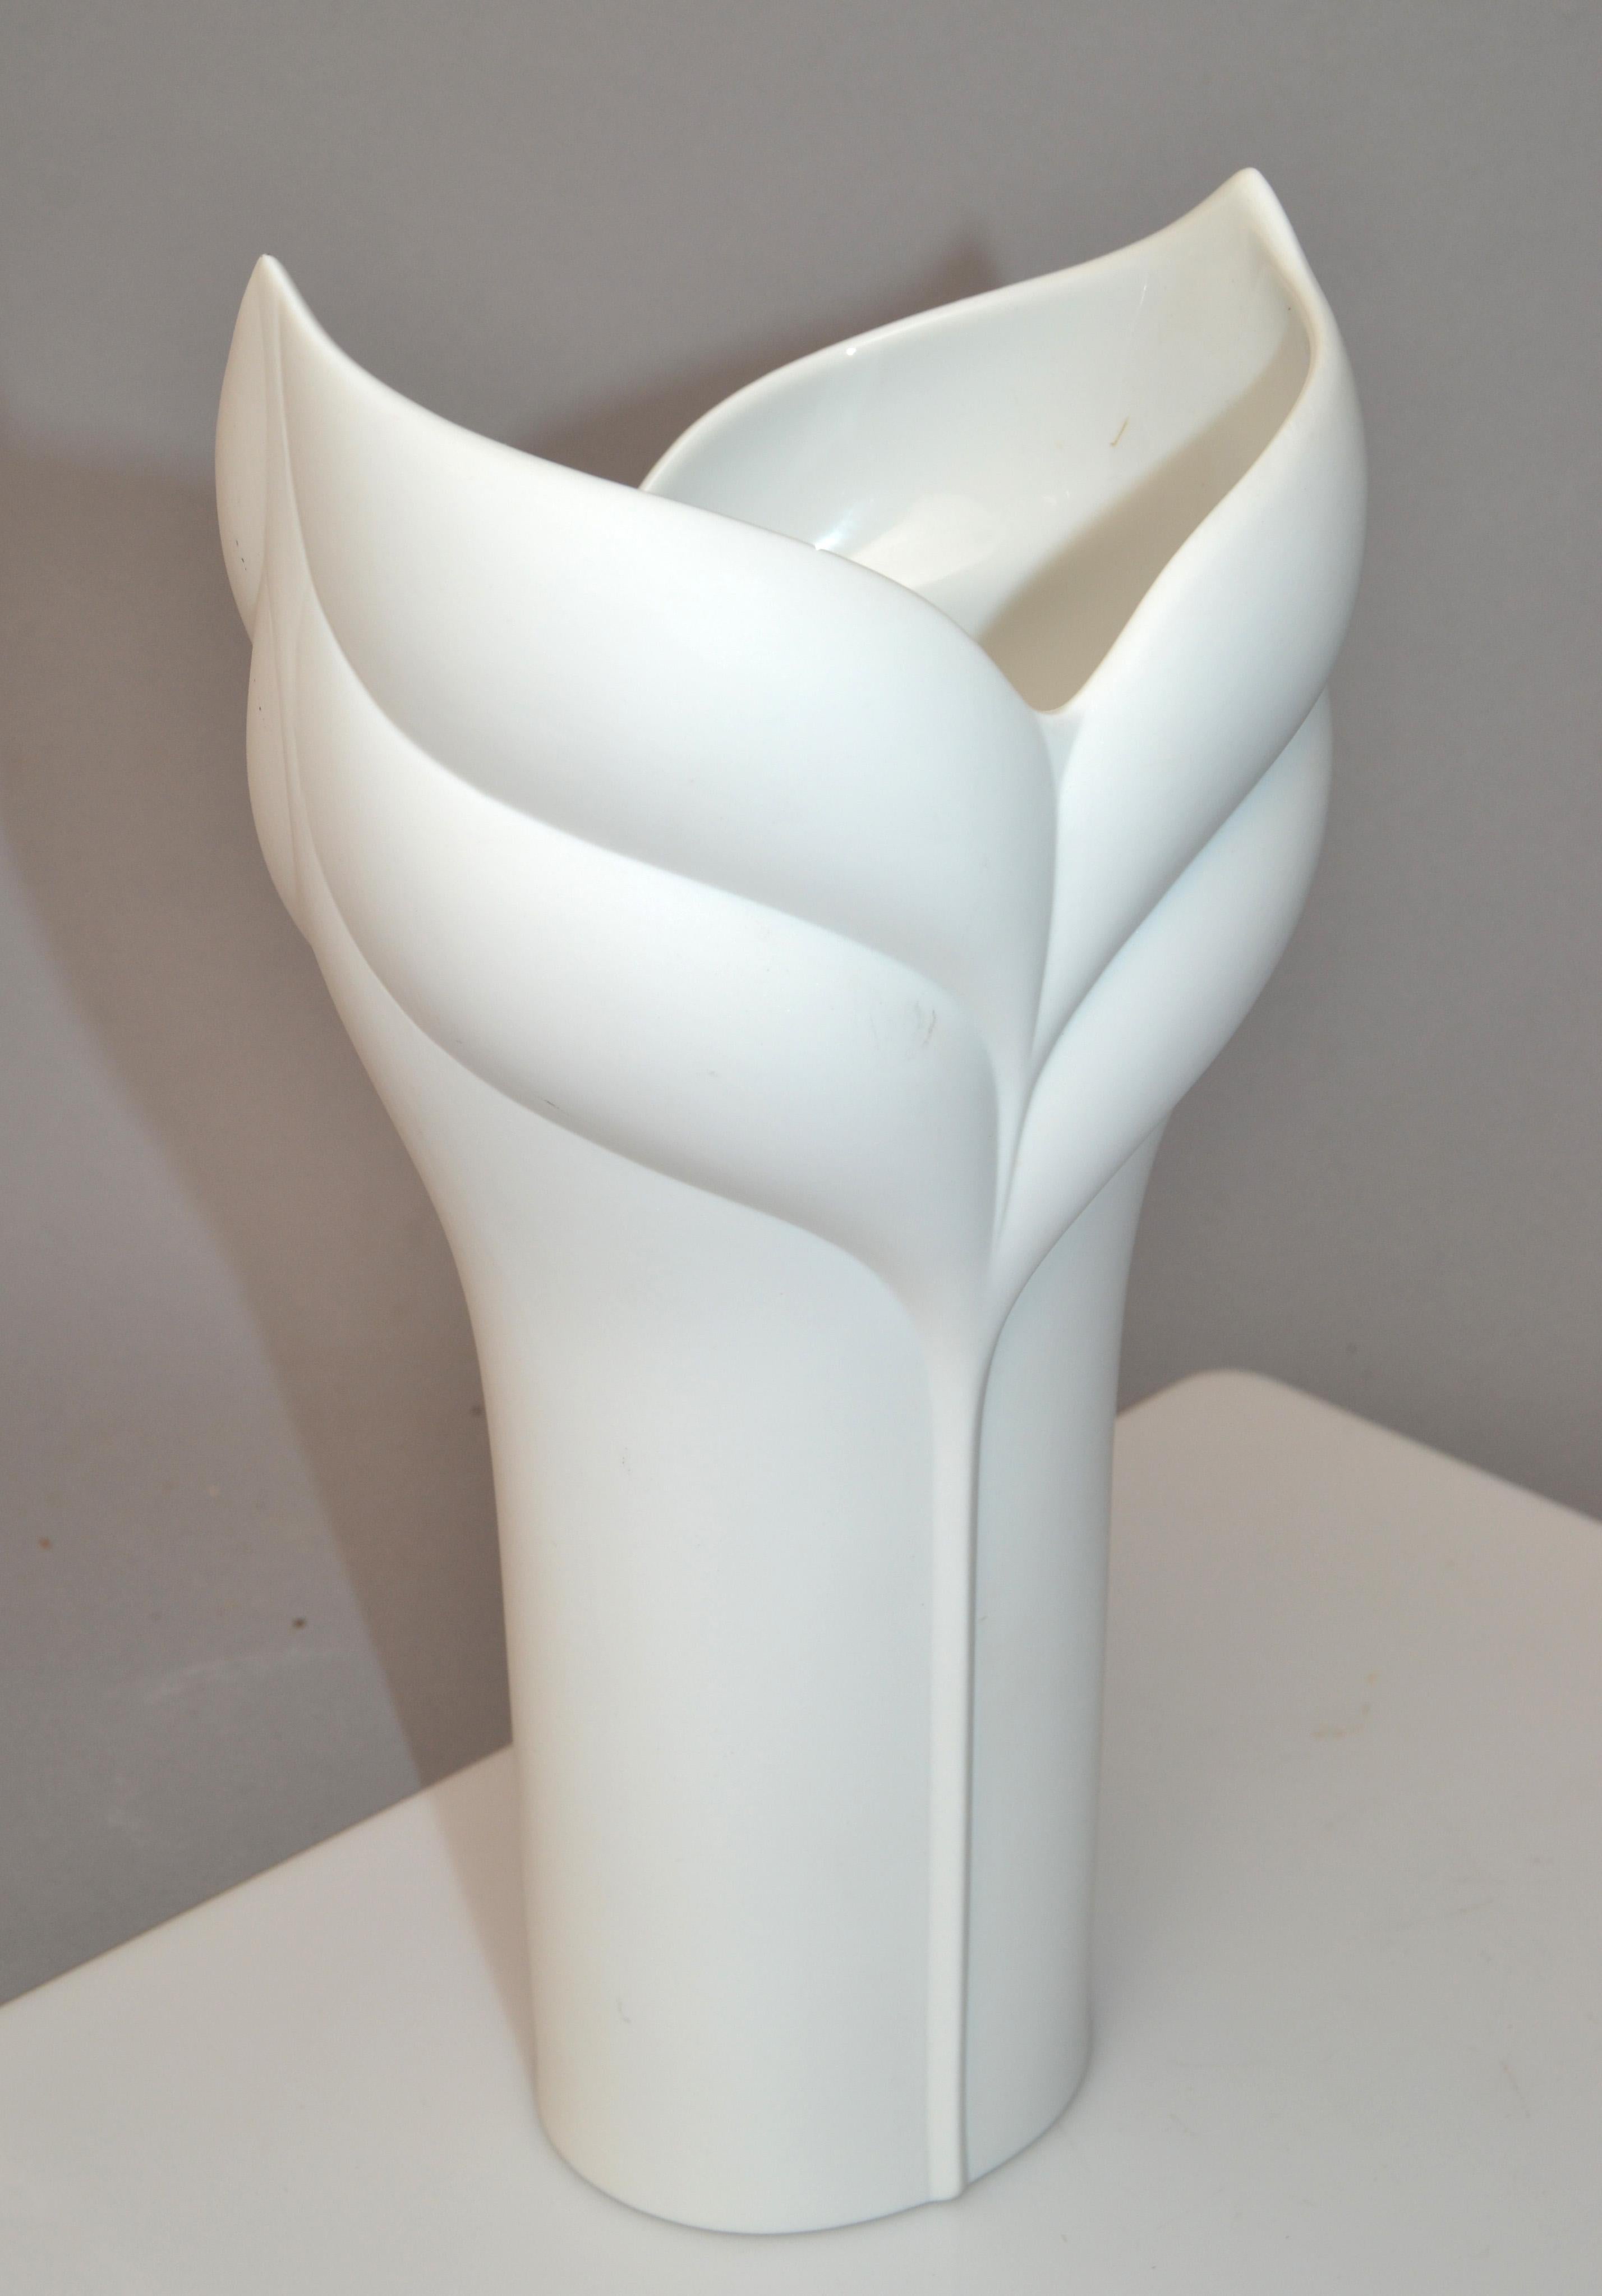 Glazed Cala Lily Rosenthal White Bisque Flower Vase Studio-Linie Germany by Uta Feyl